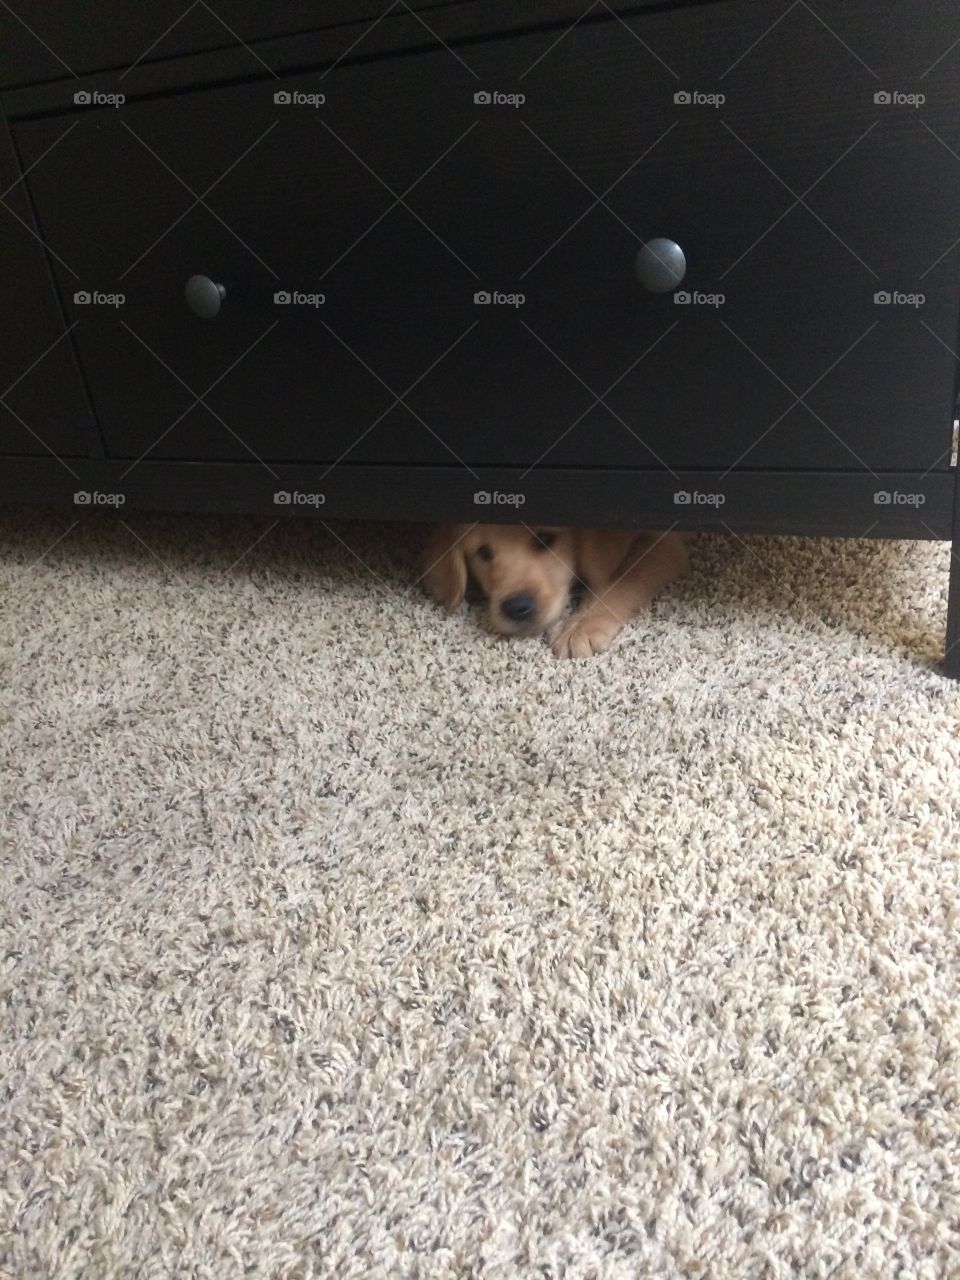 Puppy under desk. Puppy under desk